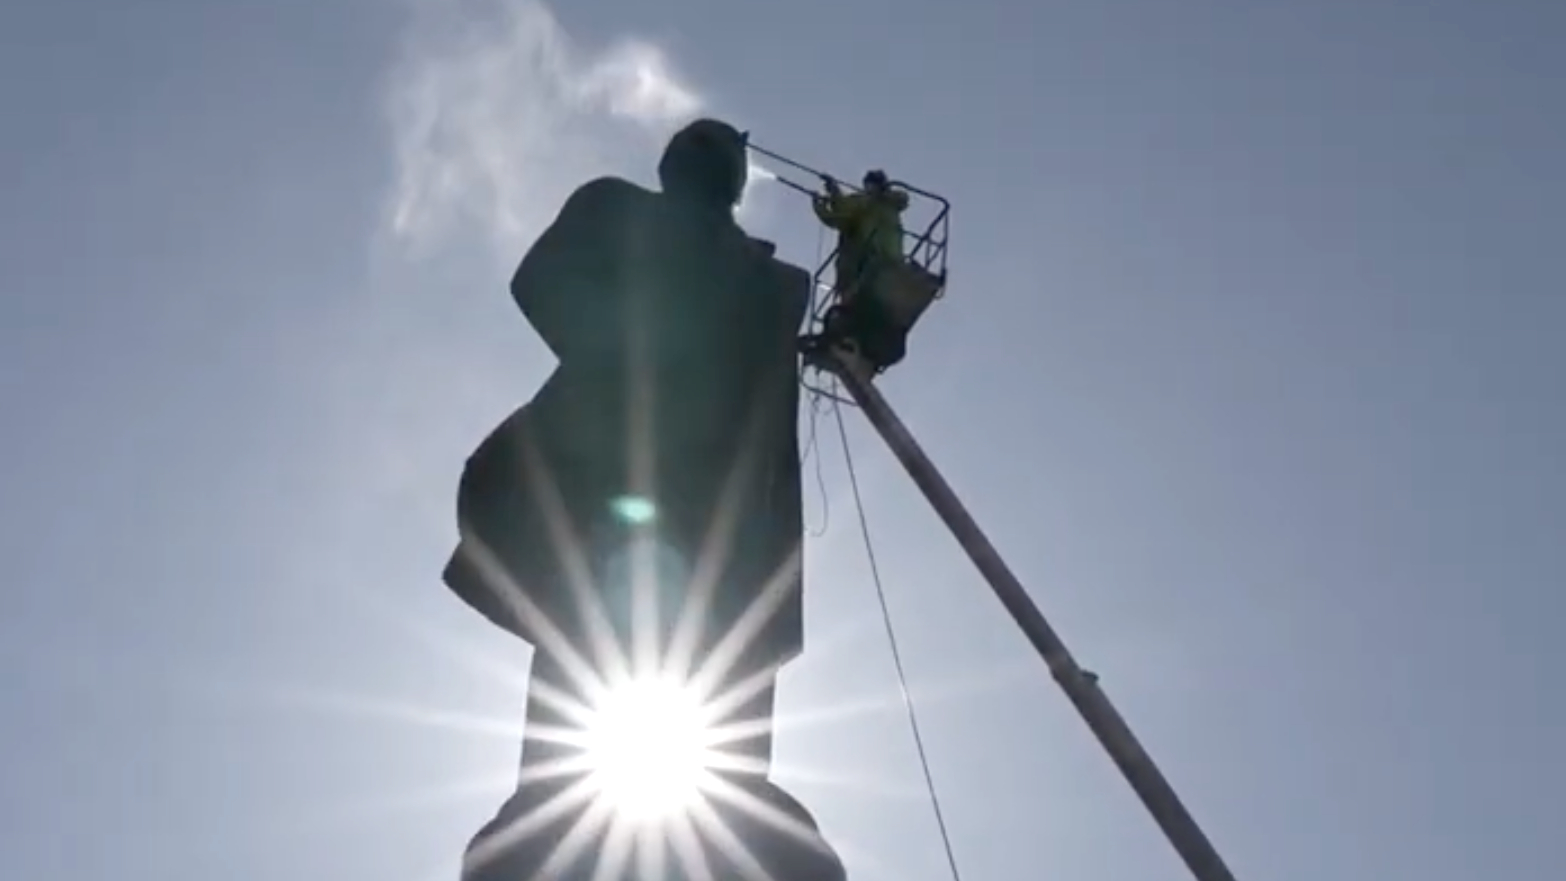 Как сносили памятники Ленину в столицах бывших республик СССР. Видео"/>













